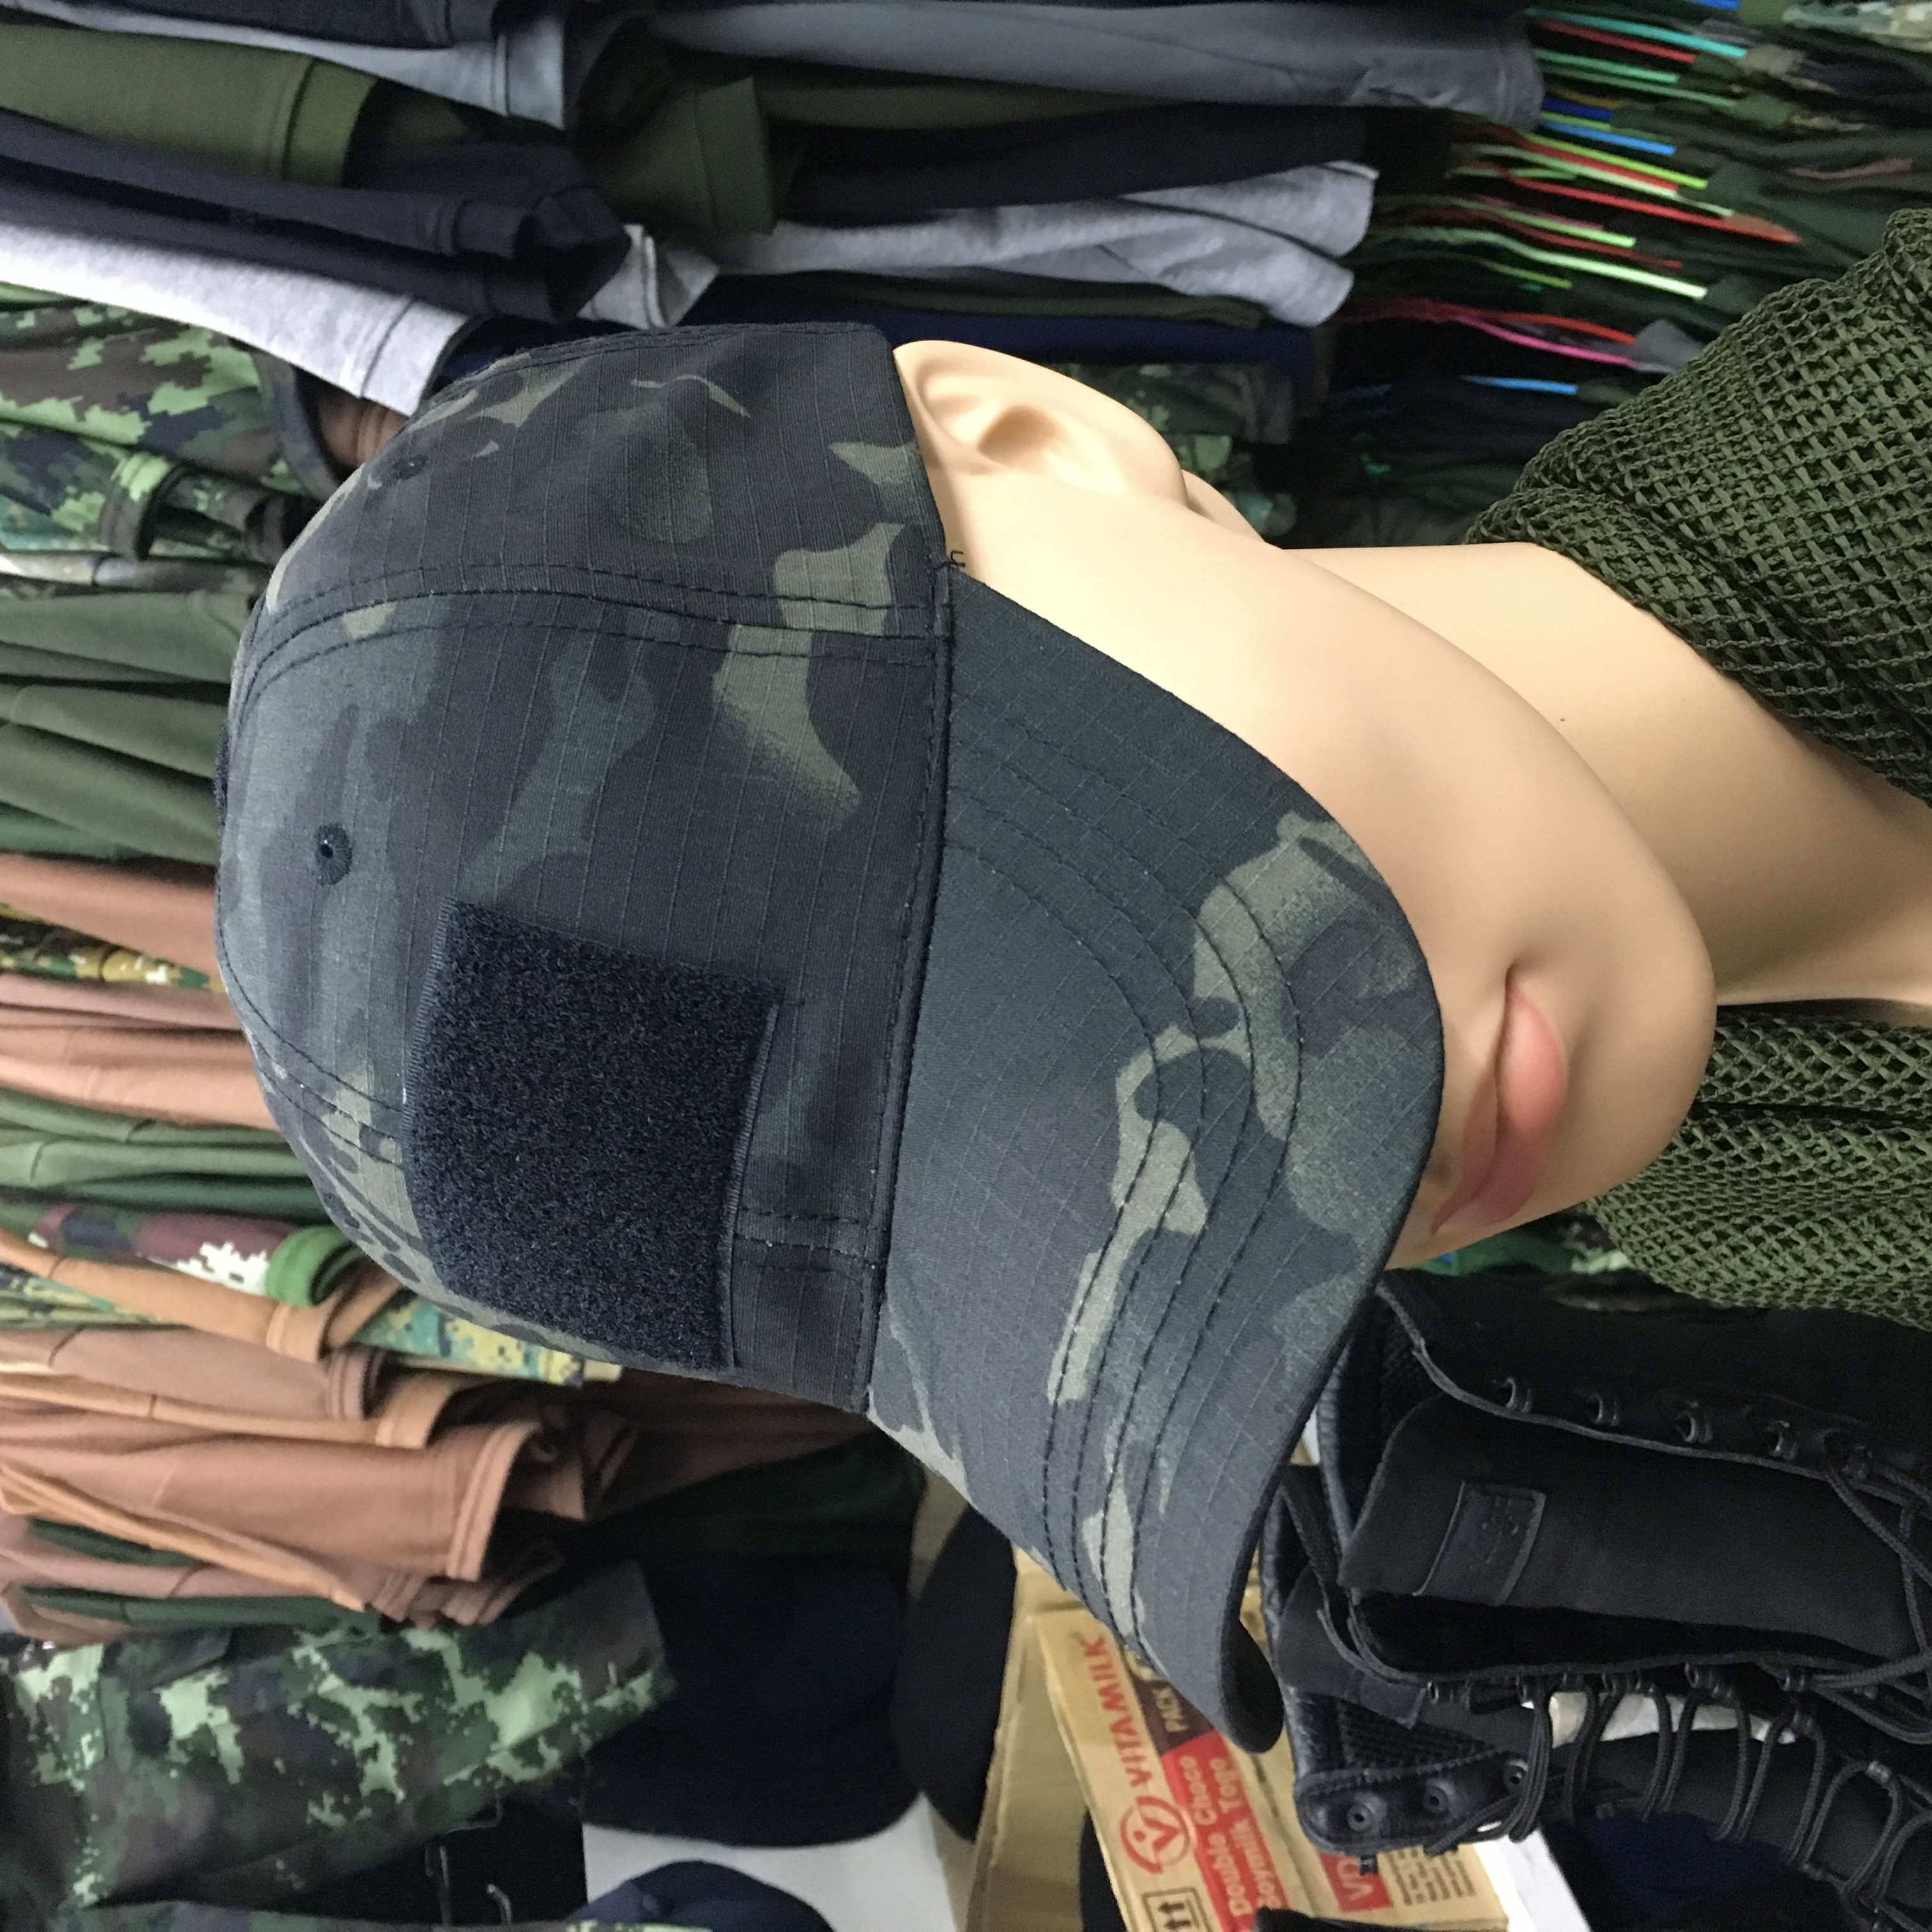 หมวกแก๊ปแทคติคอล หมวกตีนตุ๊กแก หมวกแก๊ปทหาร หมวกยุทธวิธี  เหมาะสำหรับกิจกรรมลุย ๆ